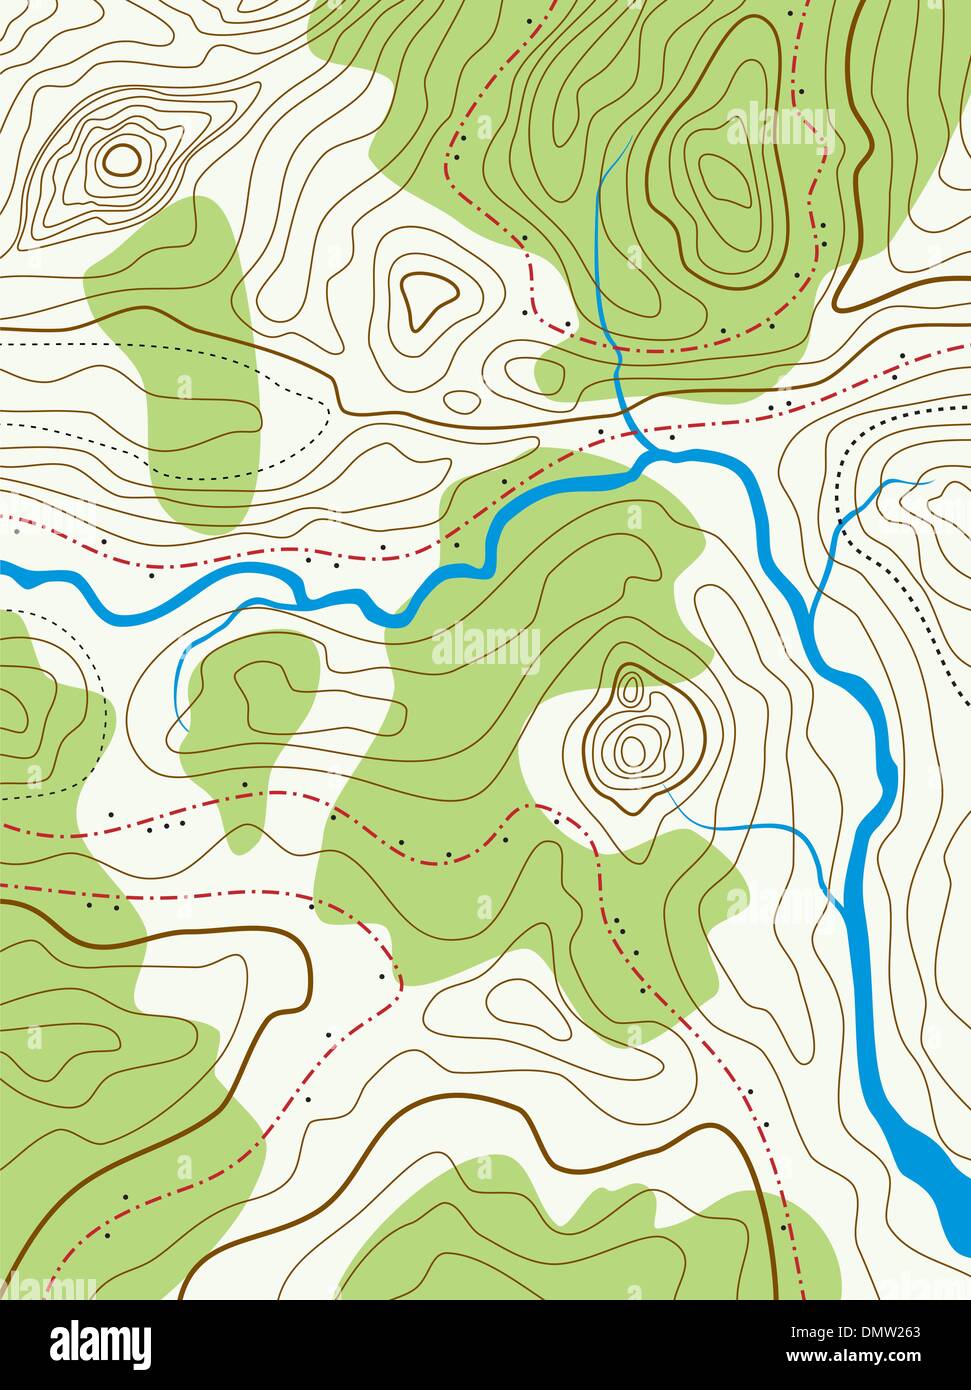 Vettore abstract mappa topografica con nessun nome Illustrazione Vettoriale